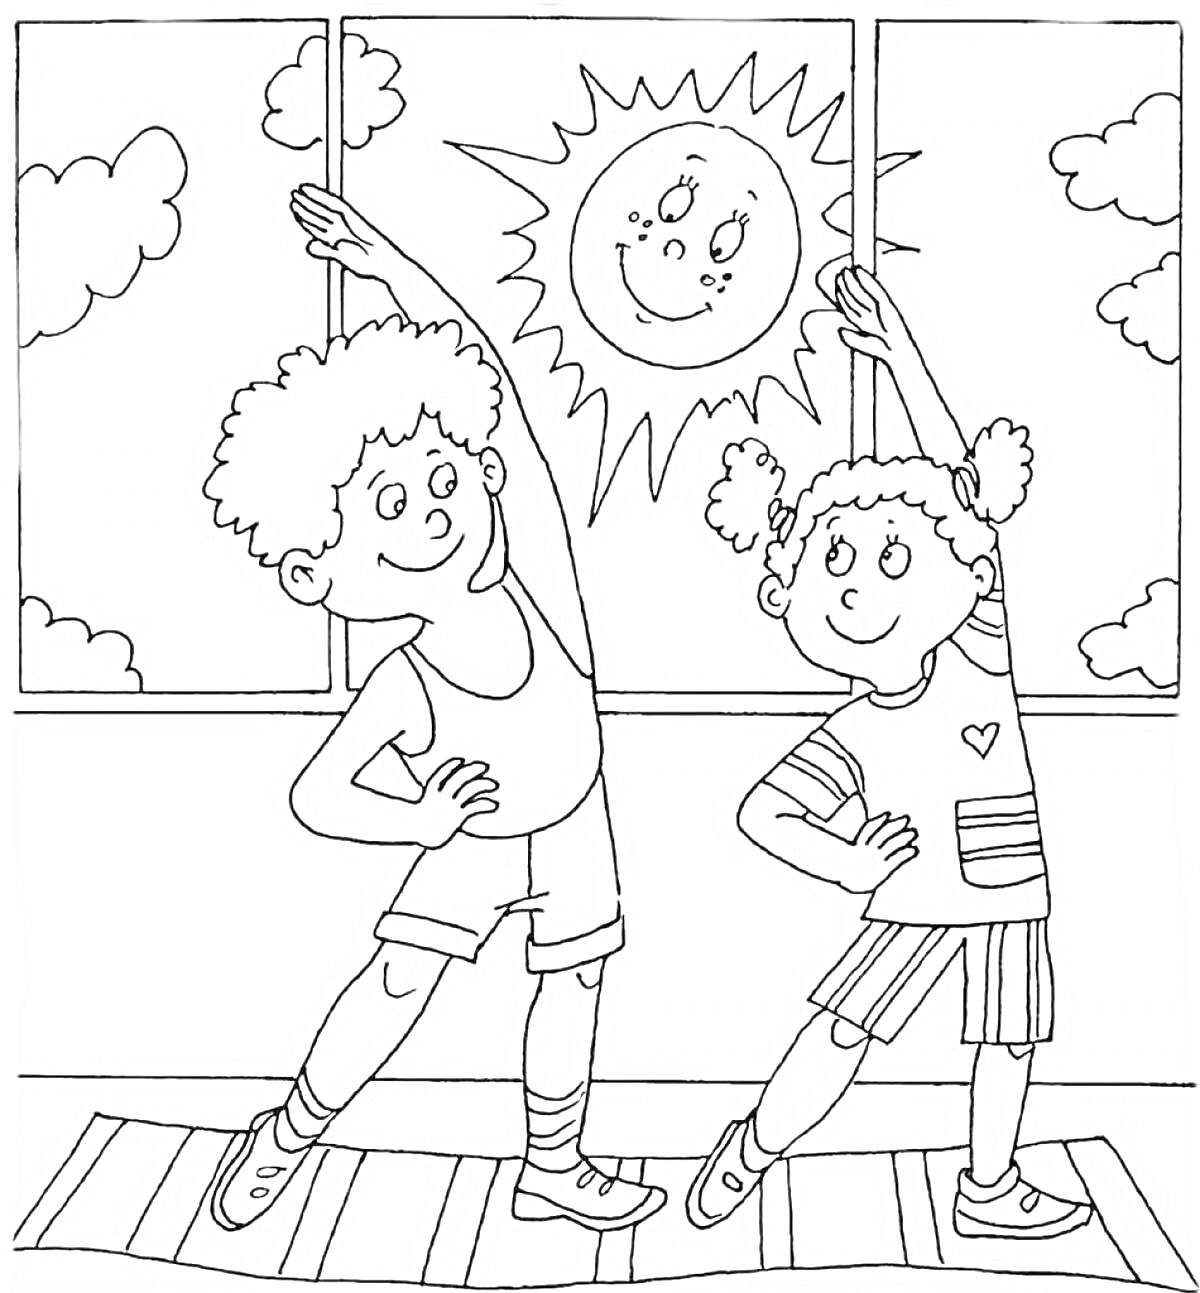 Раскраска Двое детей занимаются физкультурой перед окном, за которым светит улыбающееся солнце, с облаками на фоне.